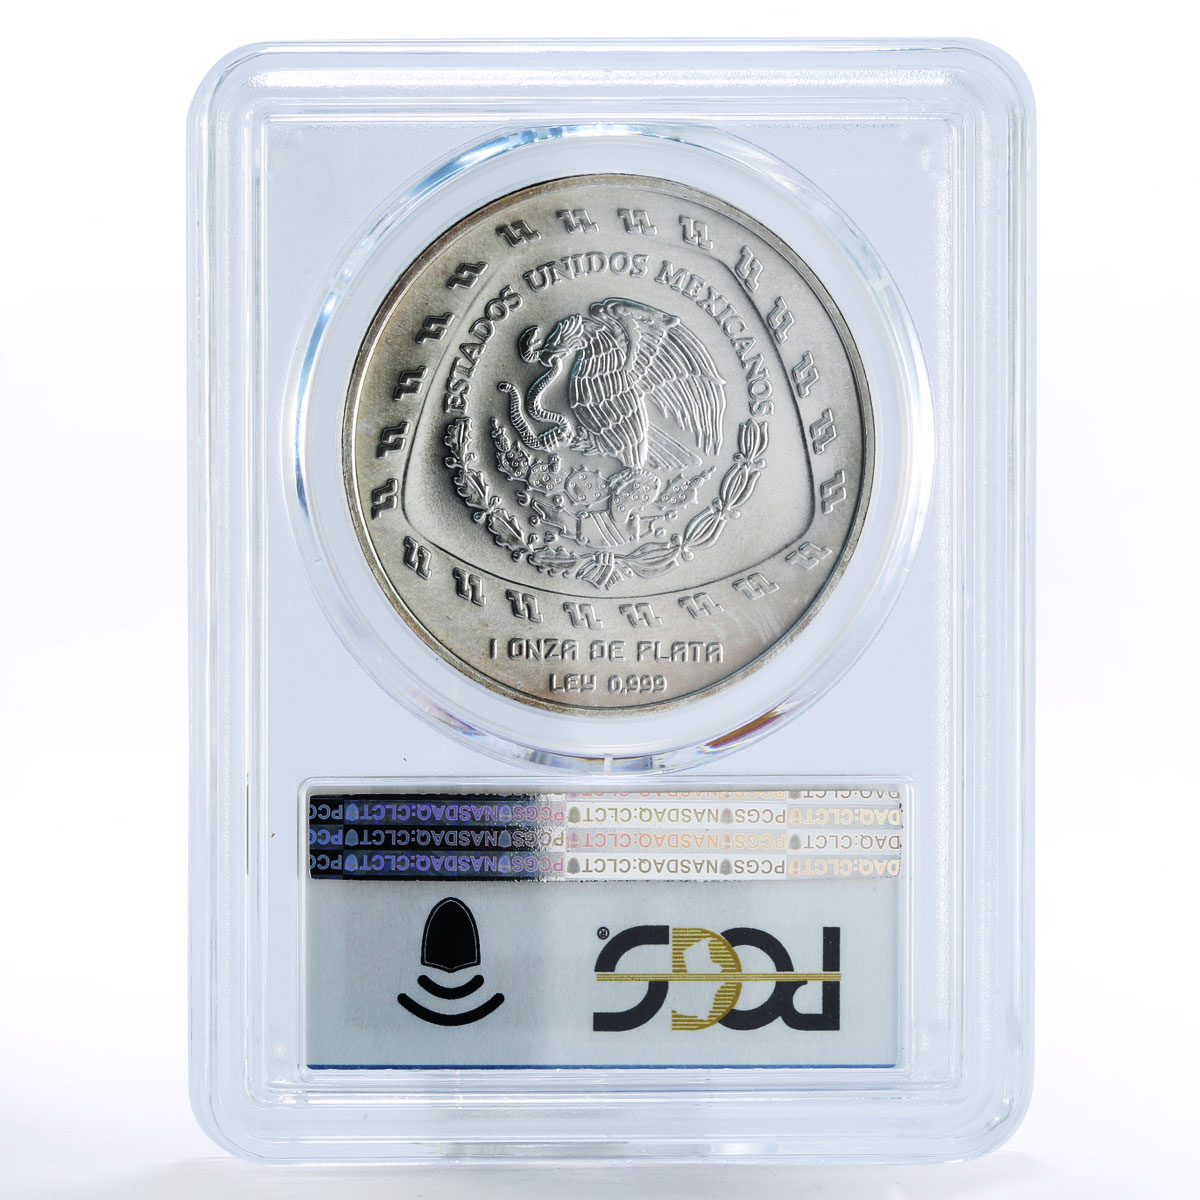 Mexico 5 pesos Precolombina Quetzalcoatl Toltec MS69 PCGS silver coin 1998